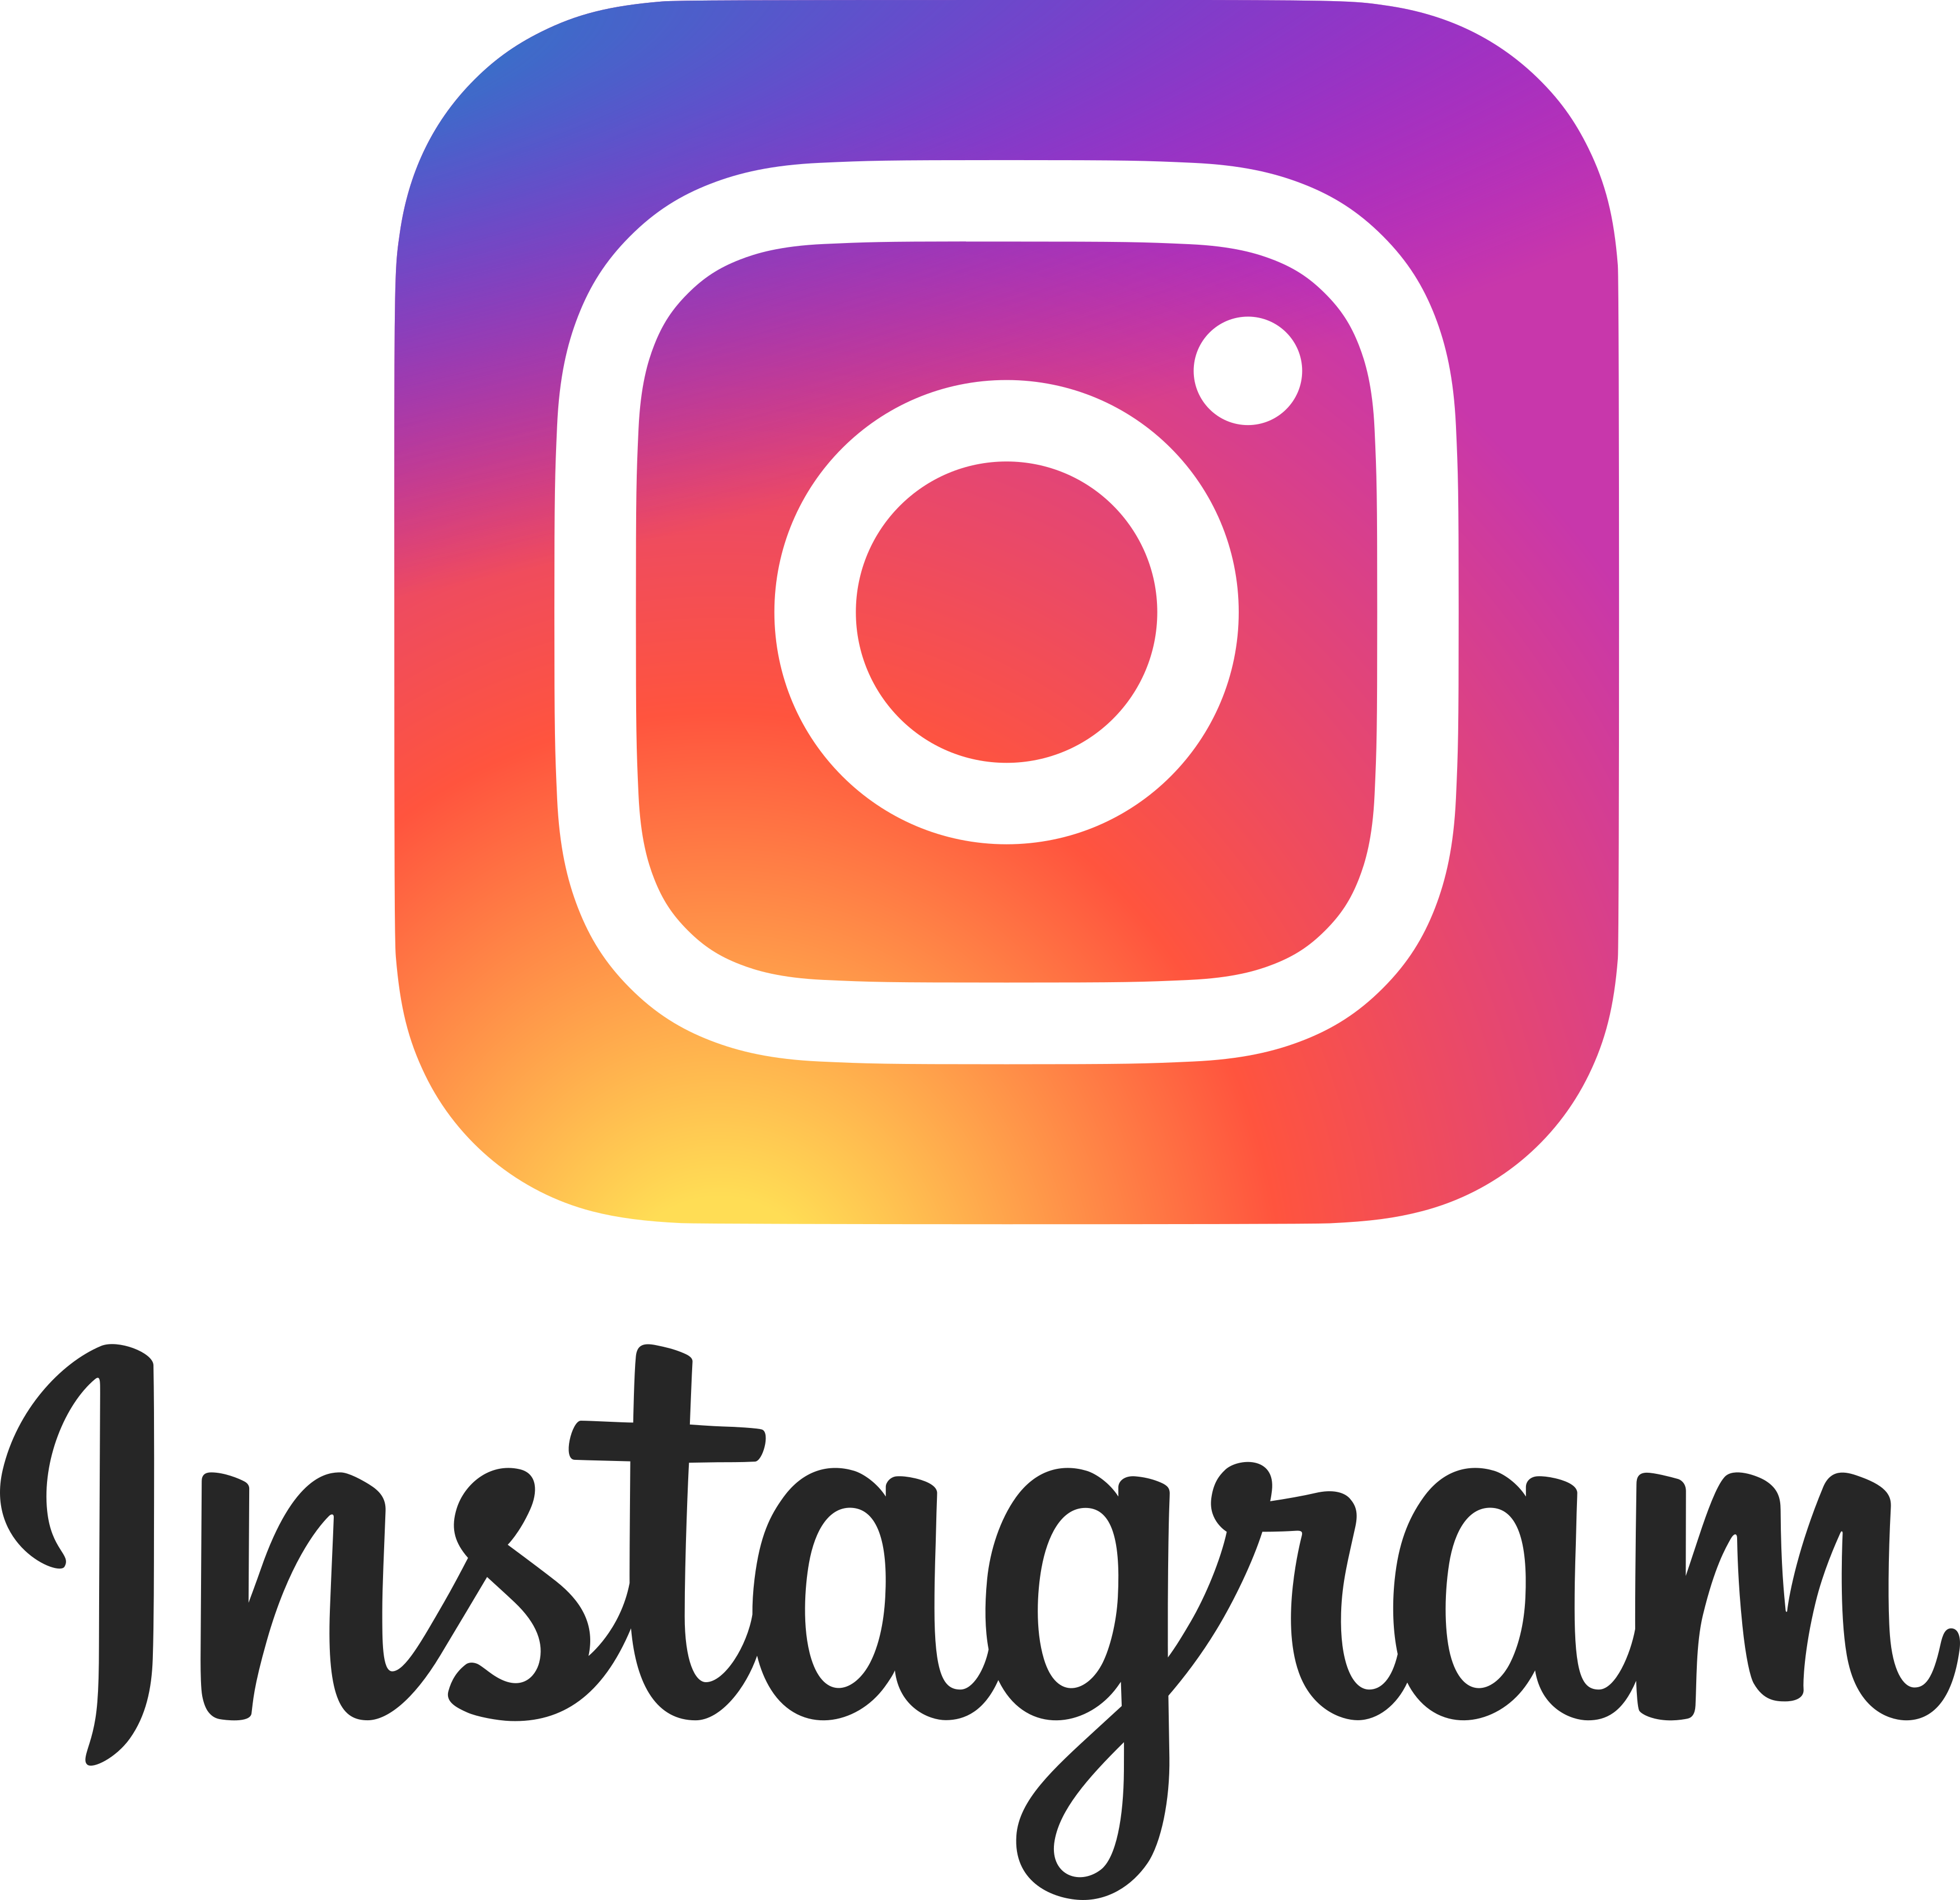 Download Logo Instagram Download HQ HQ PNG Image | FreePNGImg